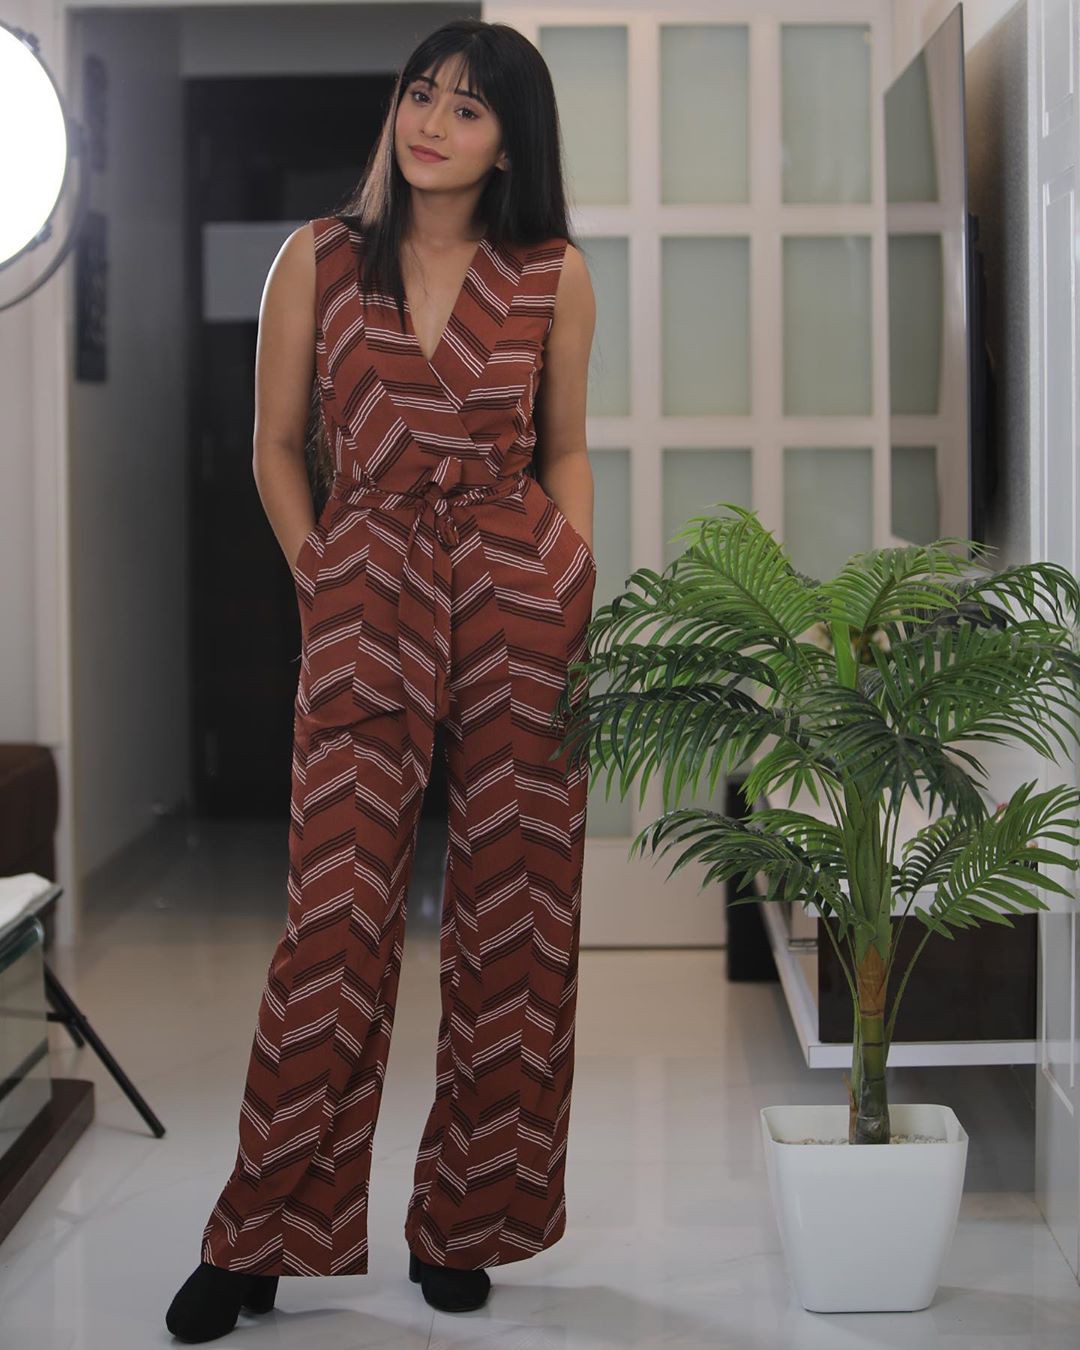 estilo de atuendo marrón con vestido, piernas sexy, ideas de atuendo: Traje Marrón,  Shivangi Joshi Instagram  